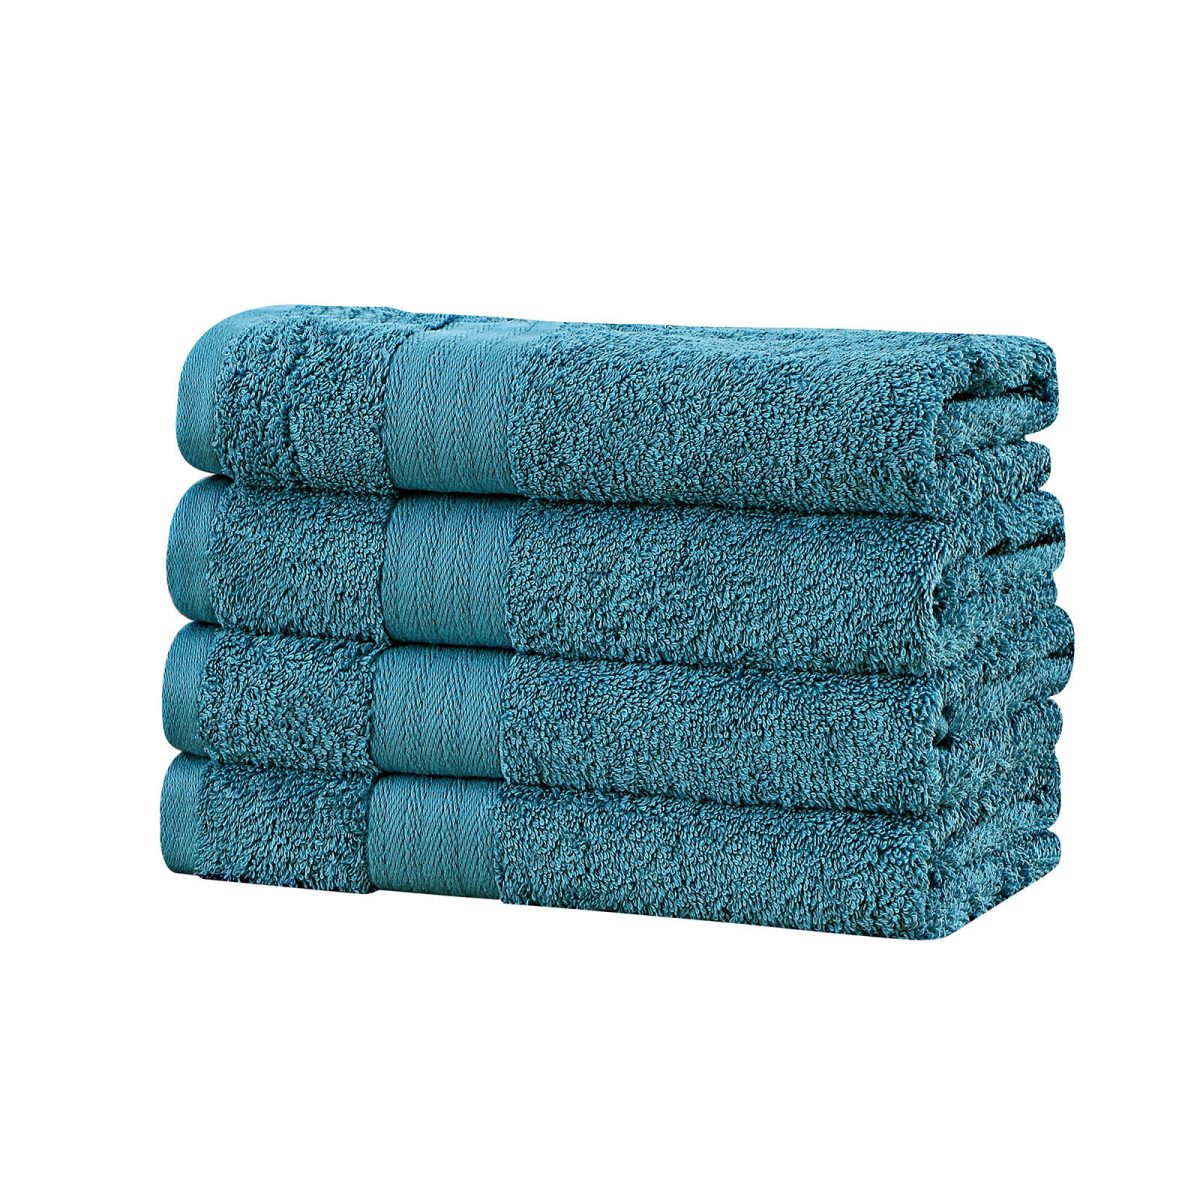 Bath Towel 4 Piece Cotton Hand Towels Set – Blue